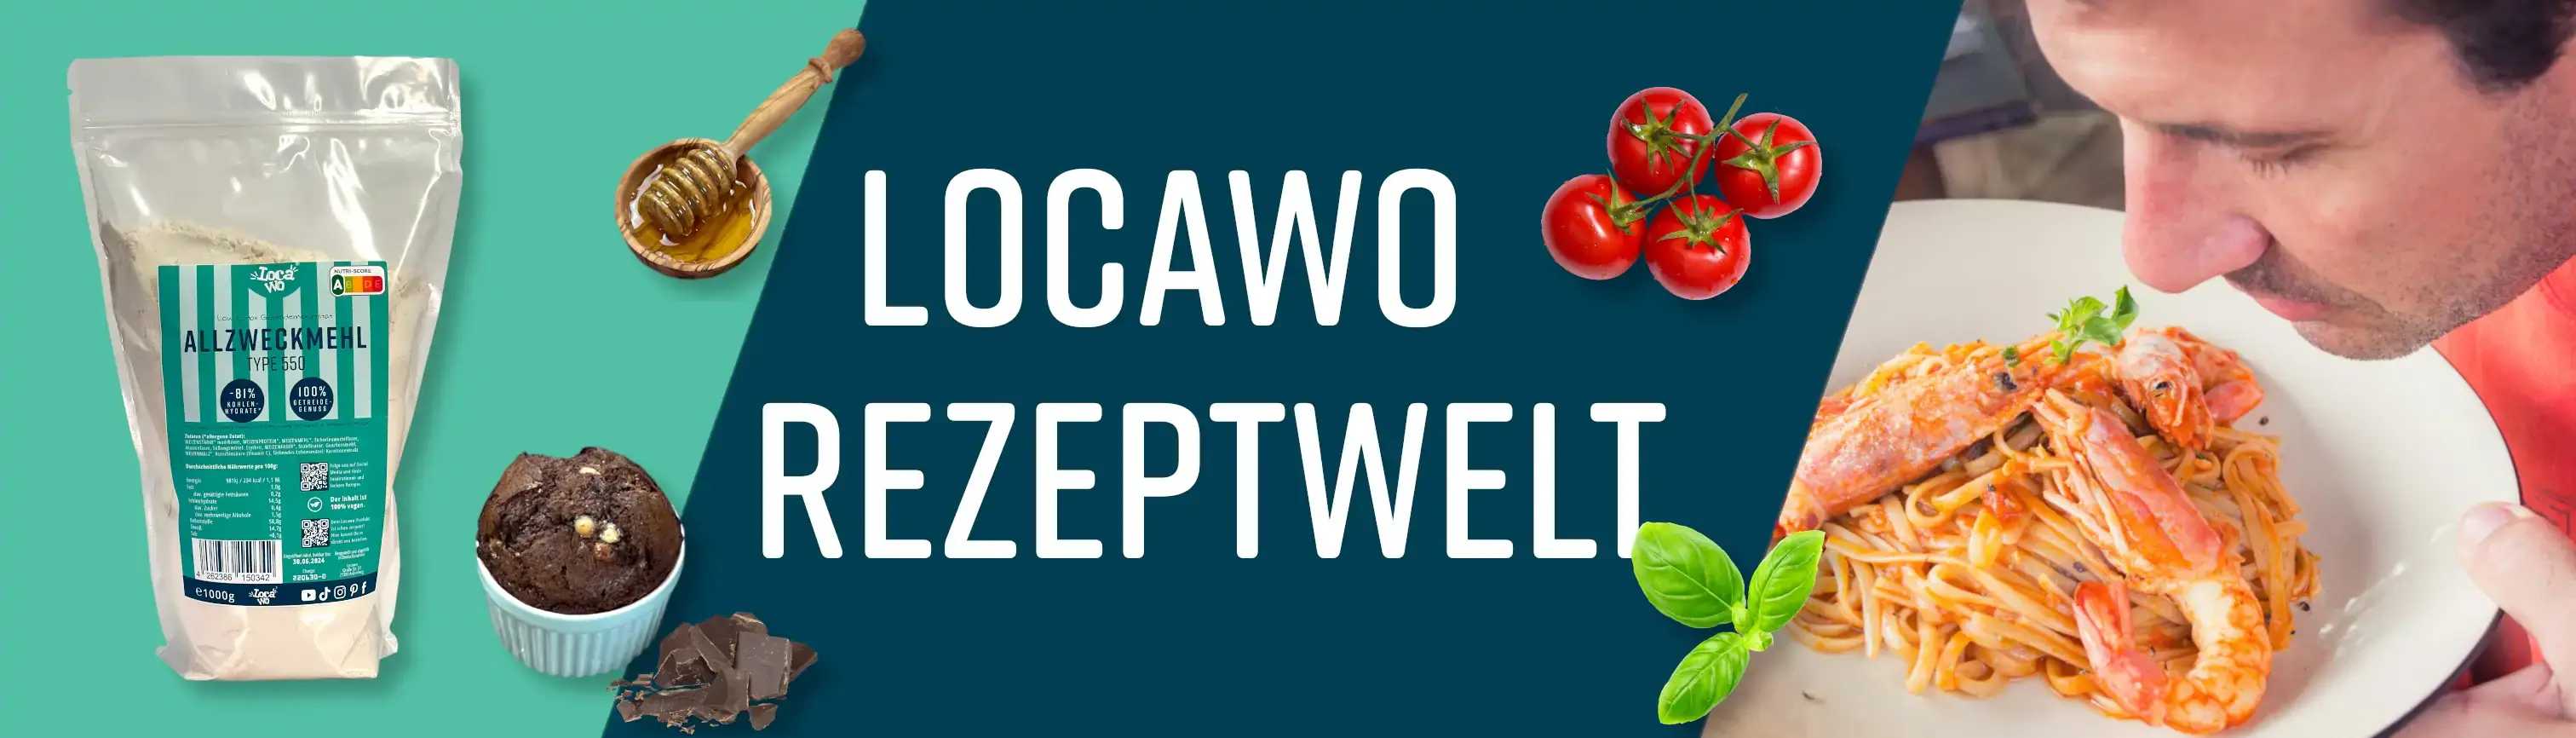 Locawo Low Carb Rezeptwelt